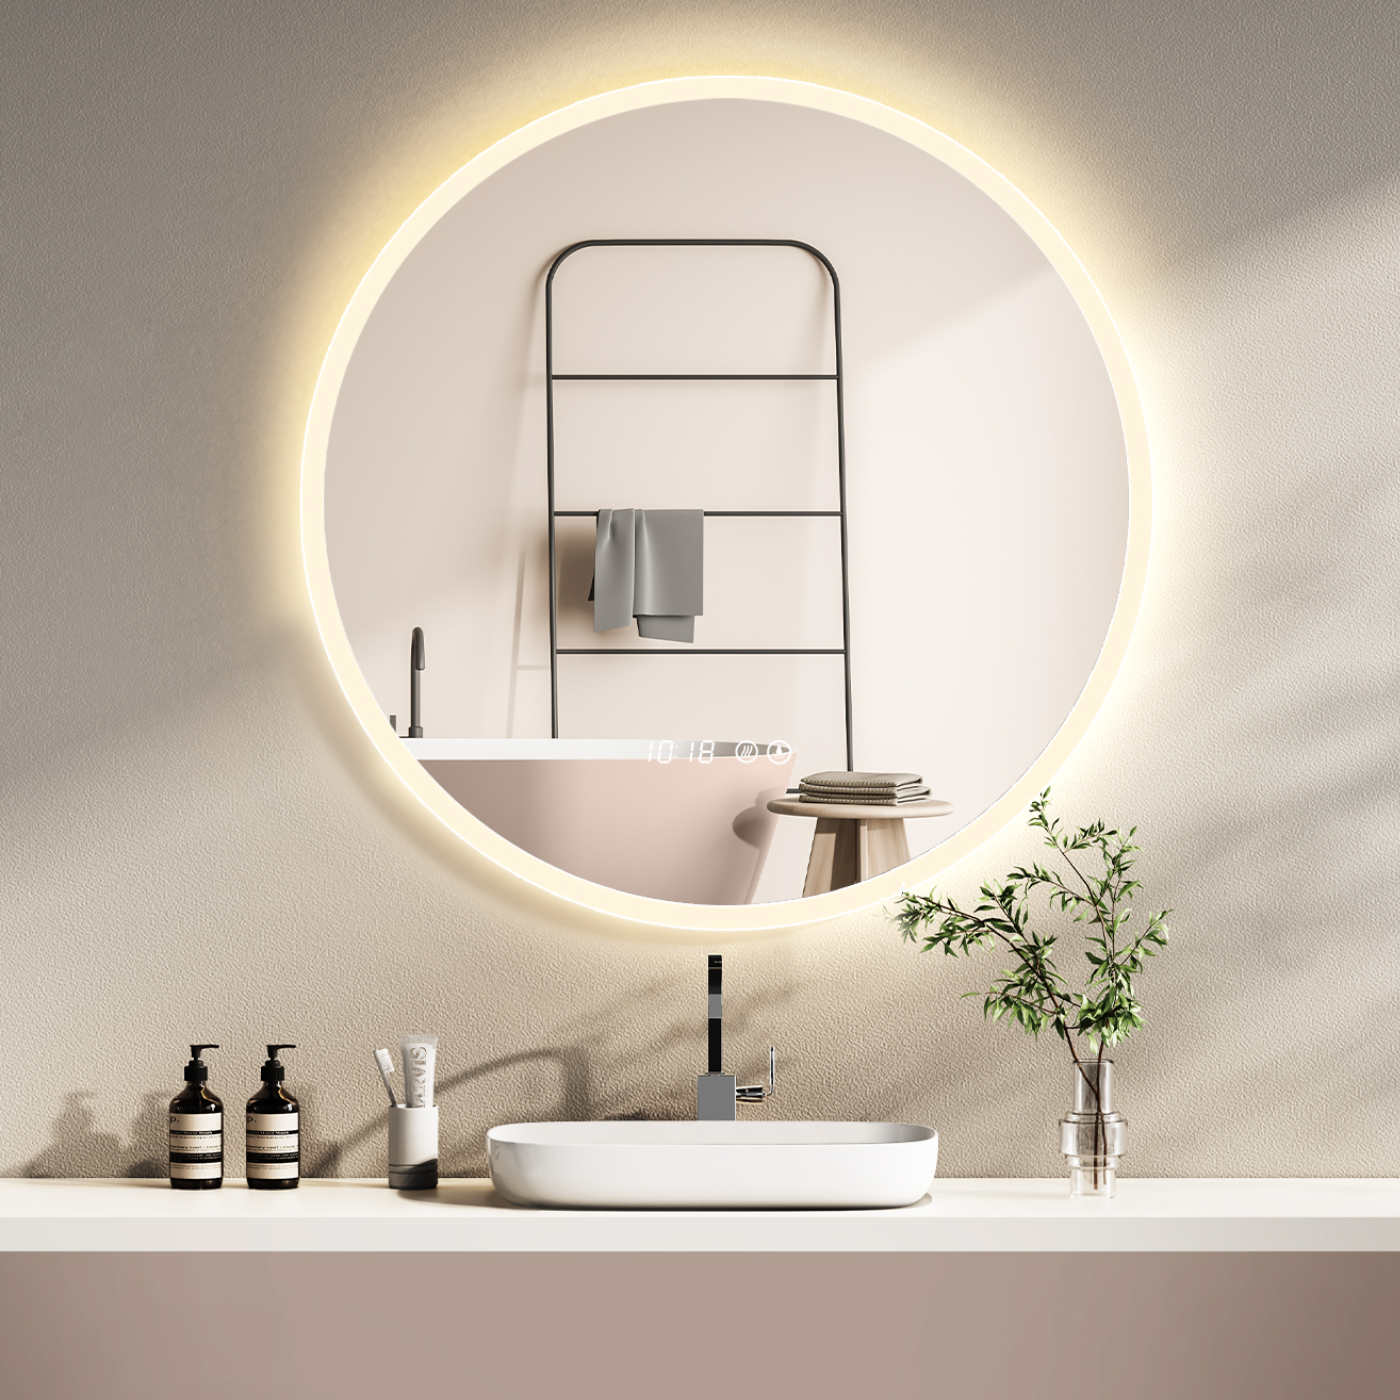 LED Badspiegel mit Lichtwechsel, runder Design-Badspiegel mit LED-Beleuchtung， Digital Uhr